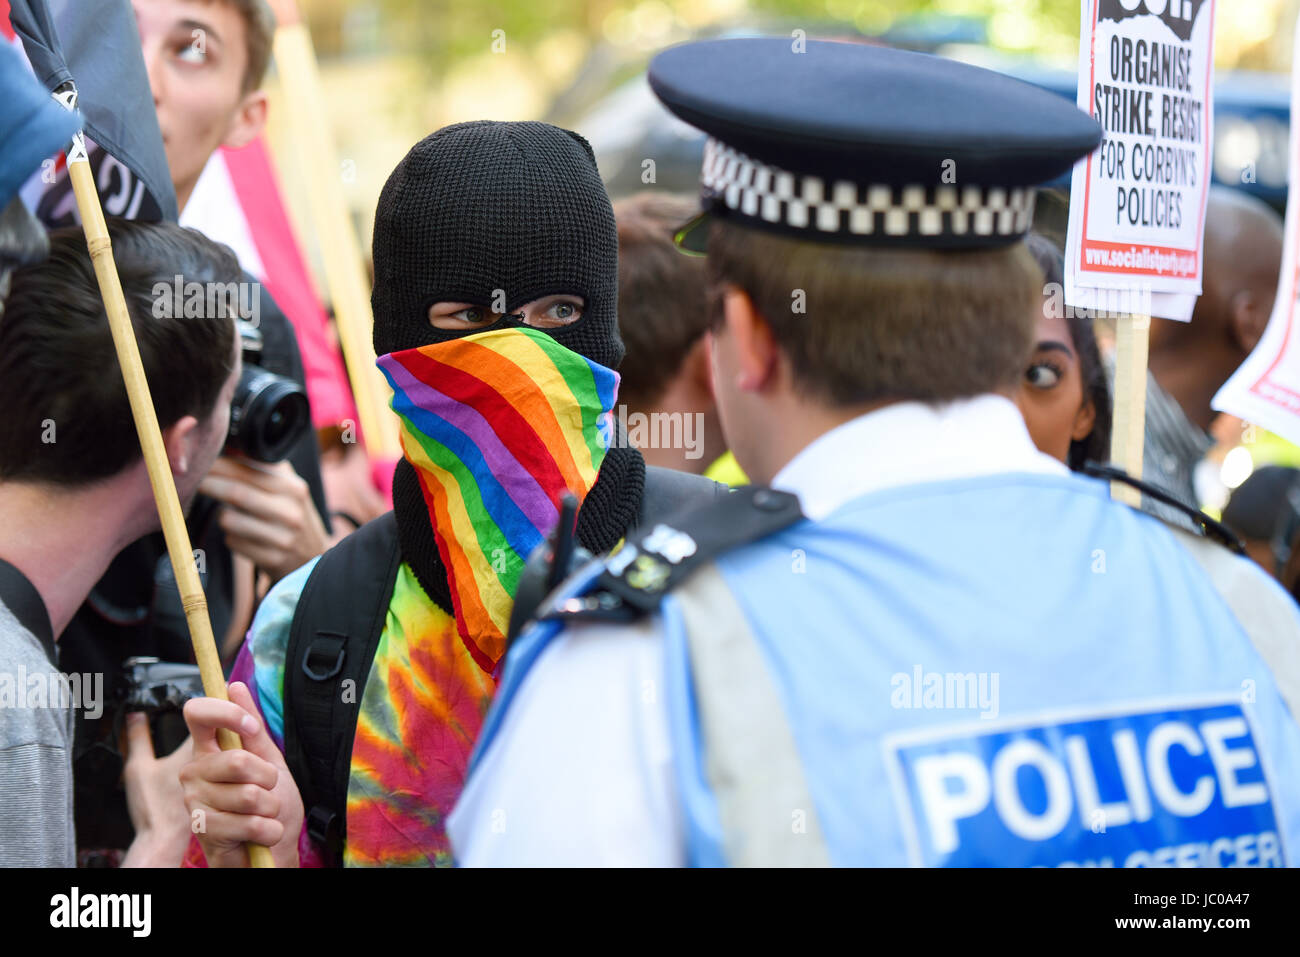 Les manifestants contre l'alliance Tory DUP se sont rassemblés sur la place du Parlement et ont marché sur Downing Street. Londres. Manifestant masqué et police Banque D'Images